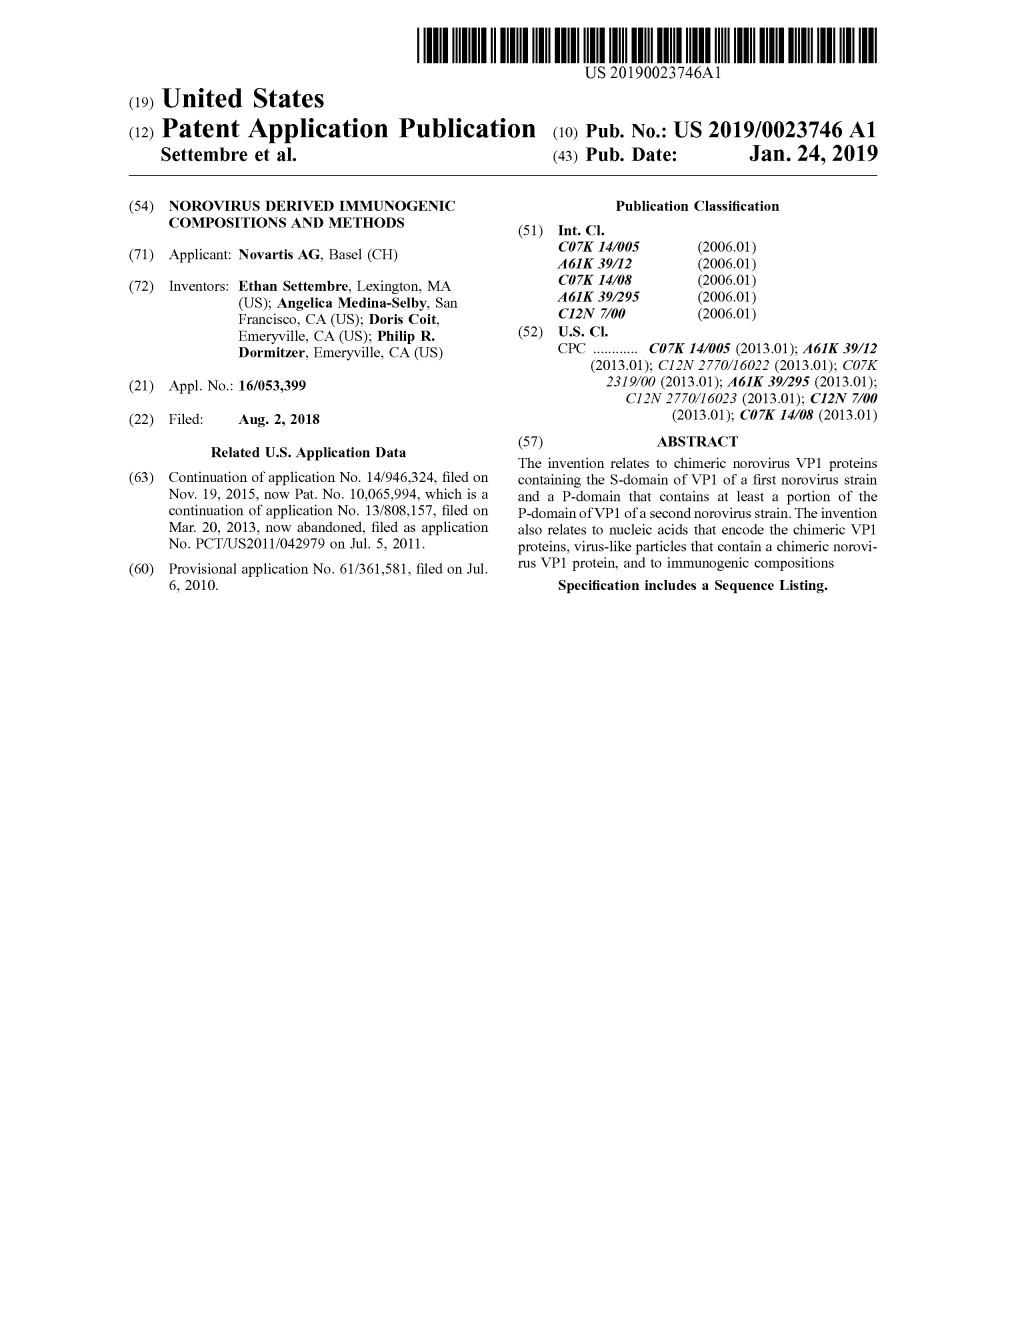 Patent Application Publication ( 10 ) Pub . No . : US 2019 / 0023746 A1